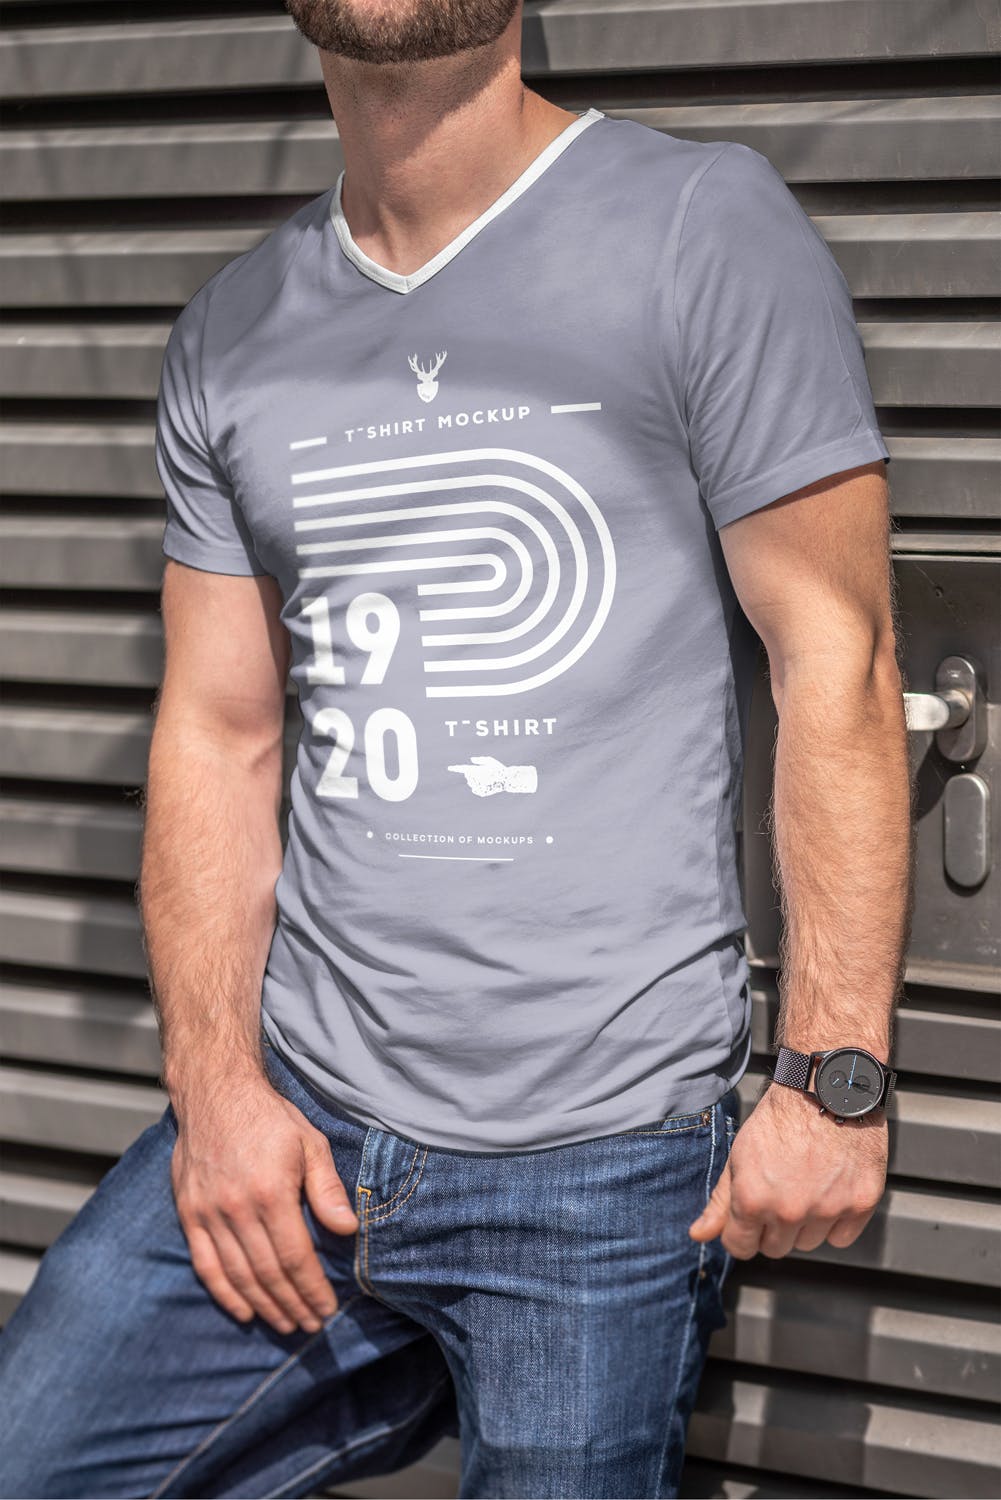 男士印花T恤真实模特上身效果图样机大洋岛精选模板 T-Shirt Mock-up 5插图7